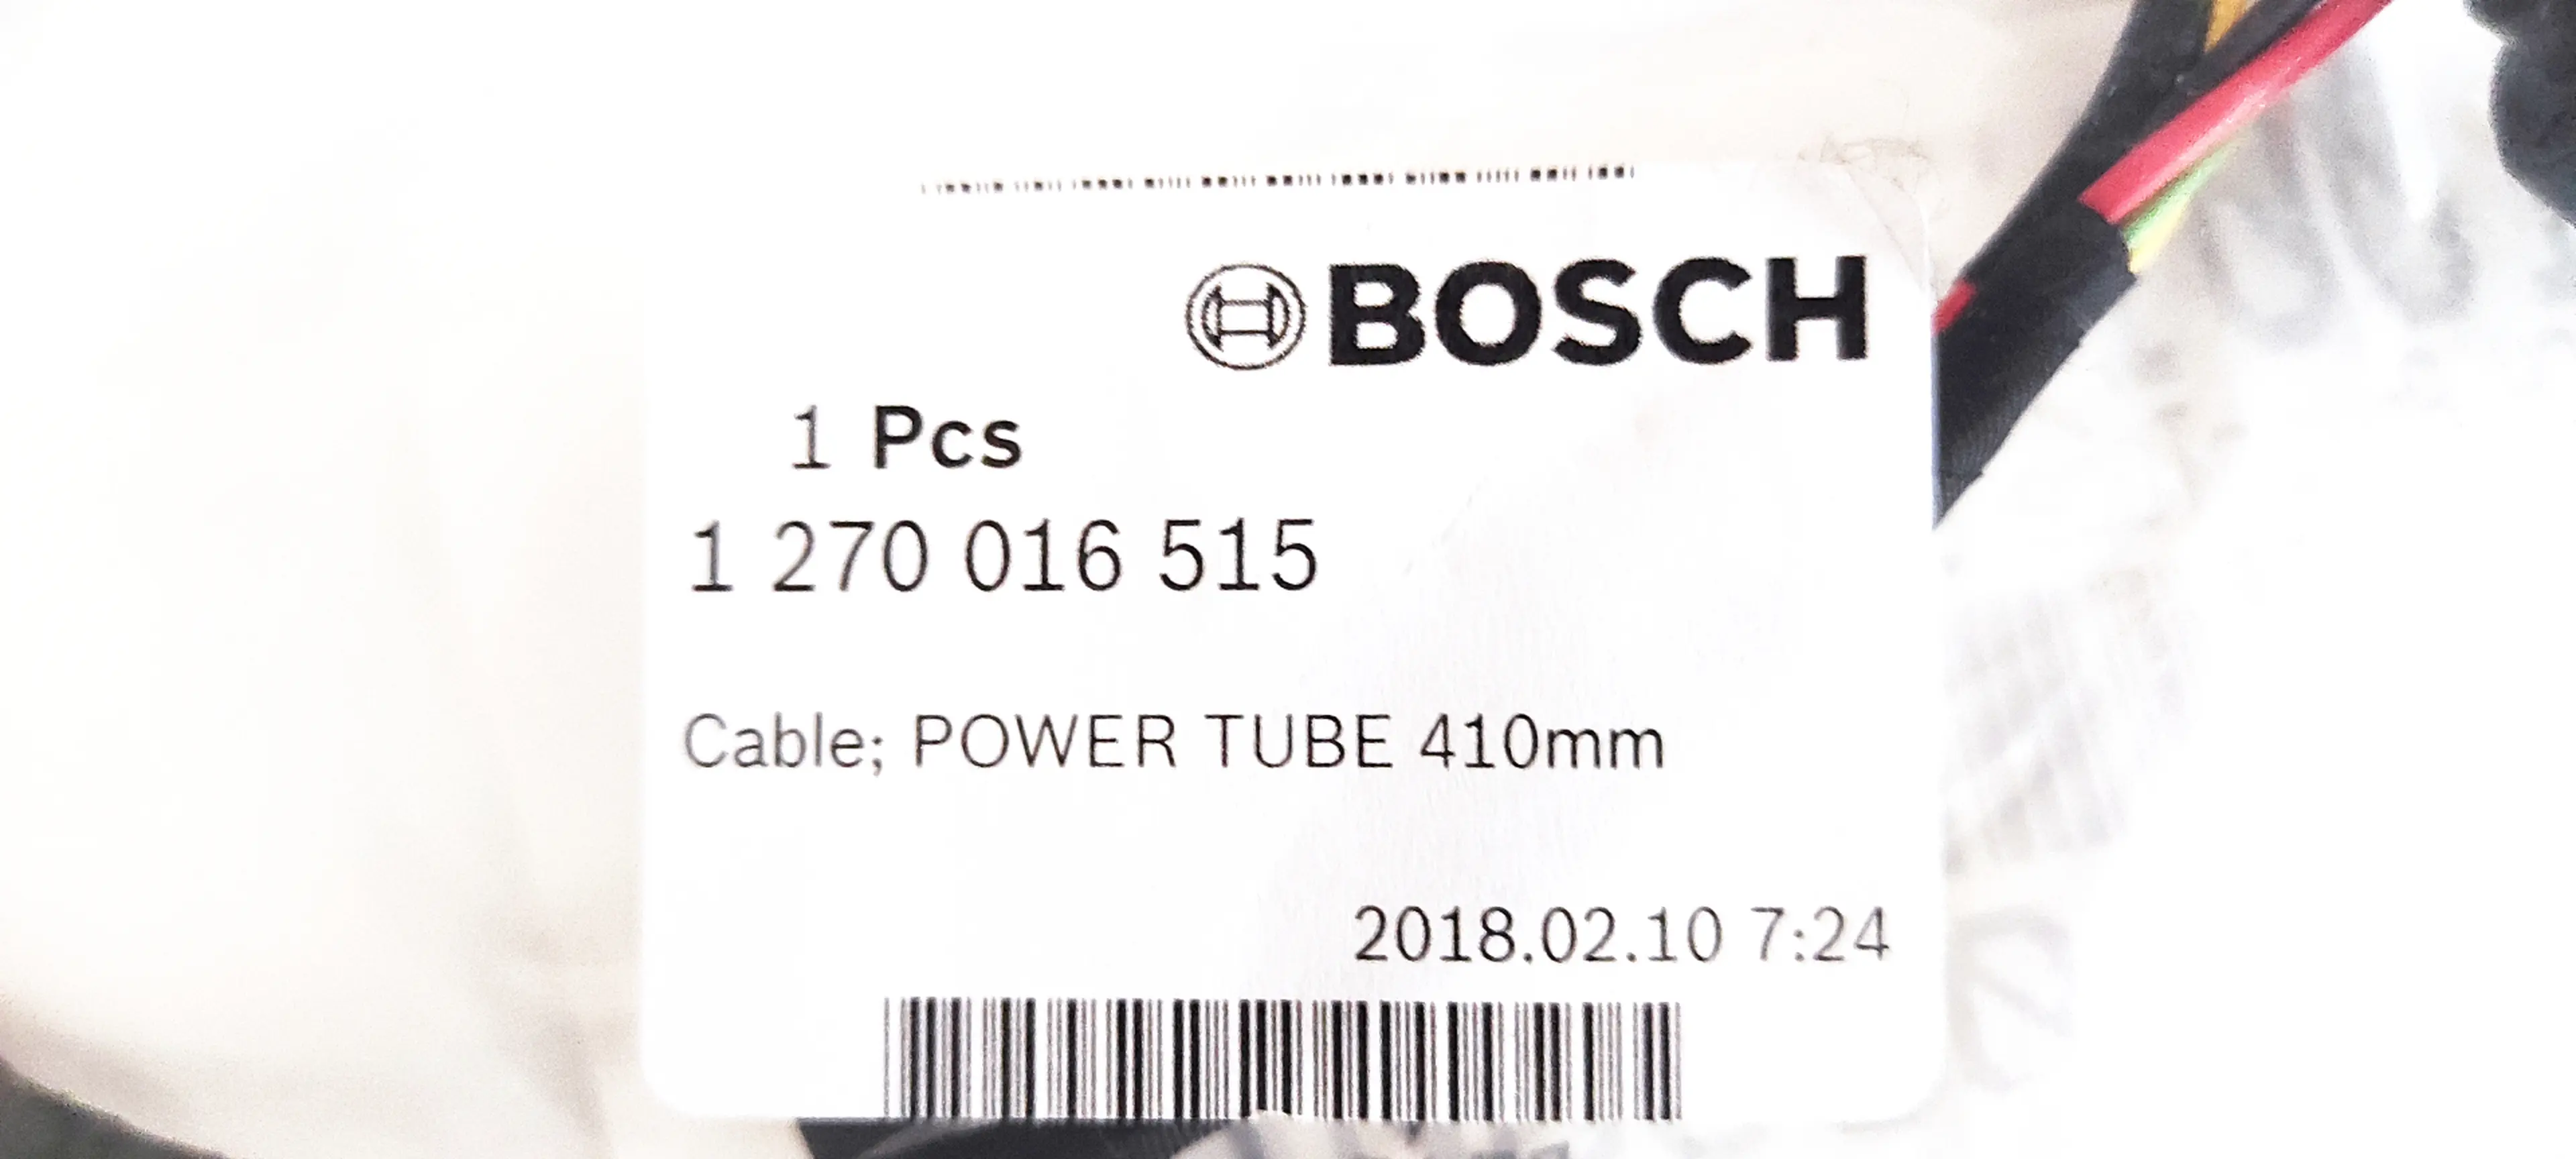 2. Cablu Bosch pentru baterie PowerTube 410mm nou